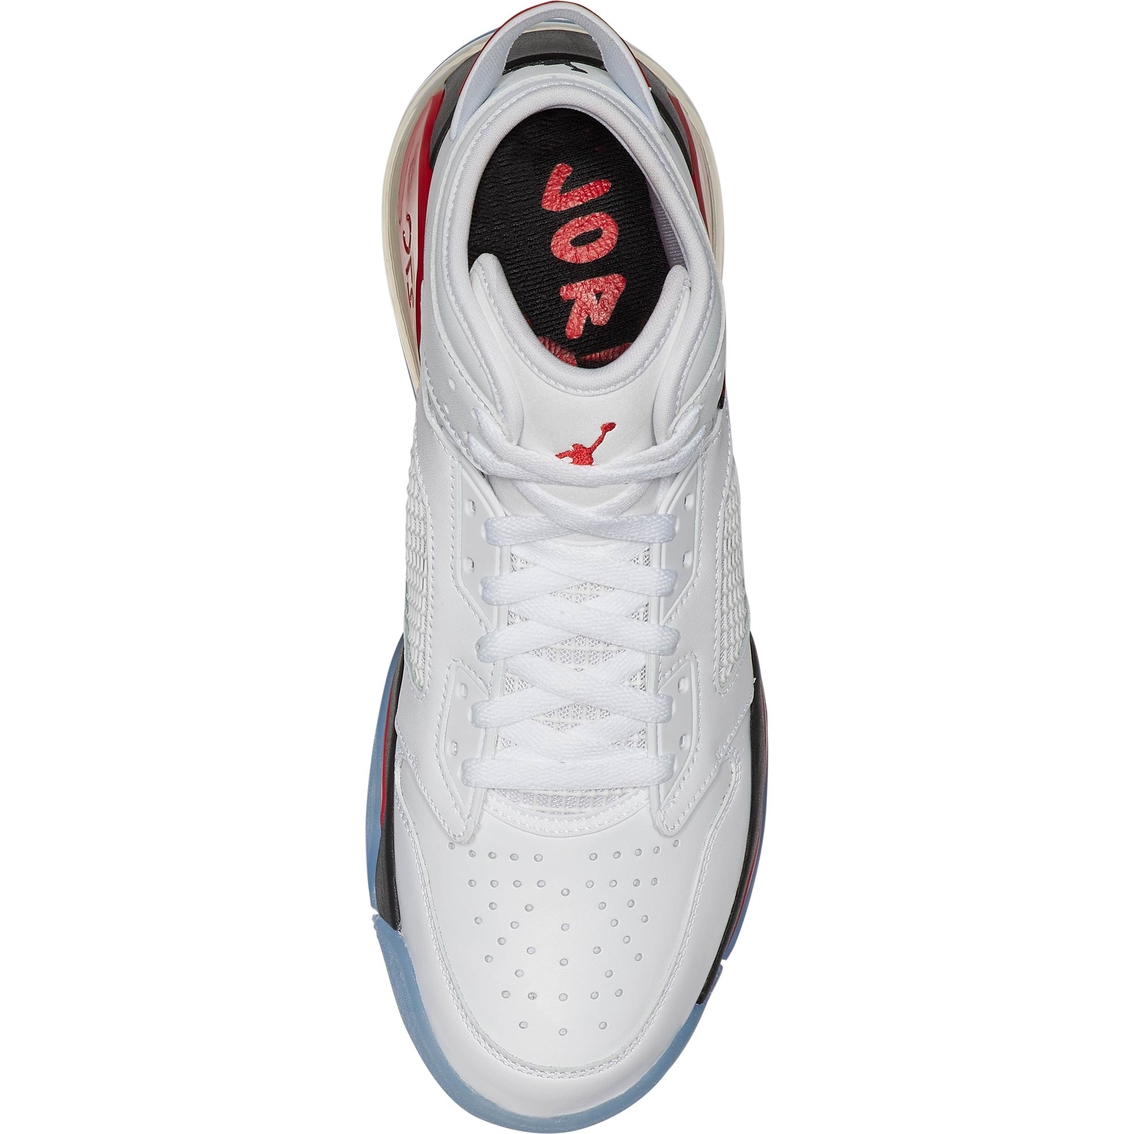 Jordan Men's Mars 270 Shoes - Image 4 of 6